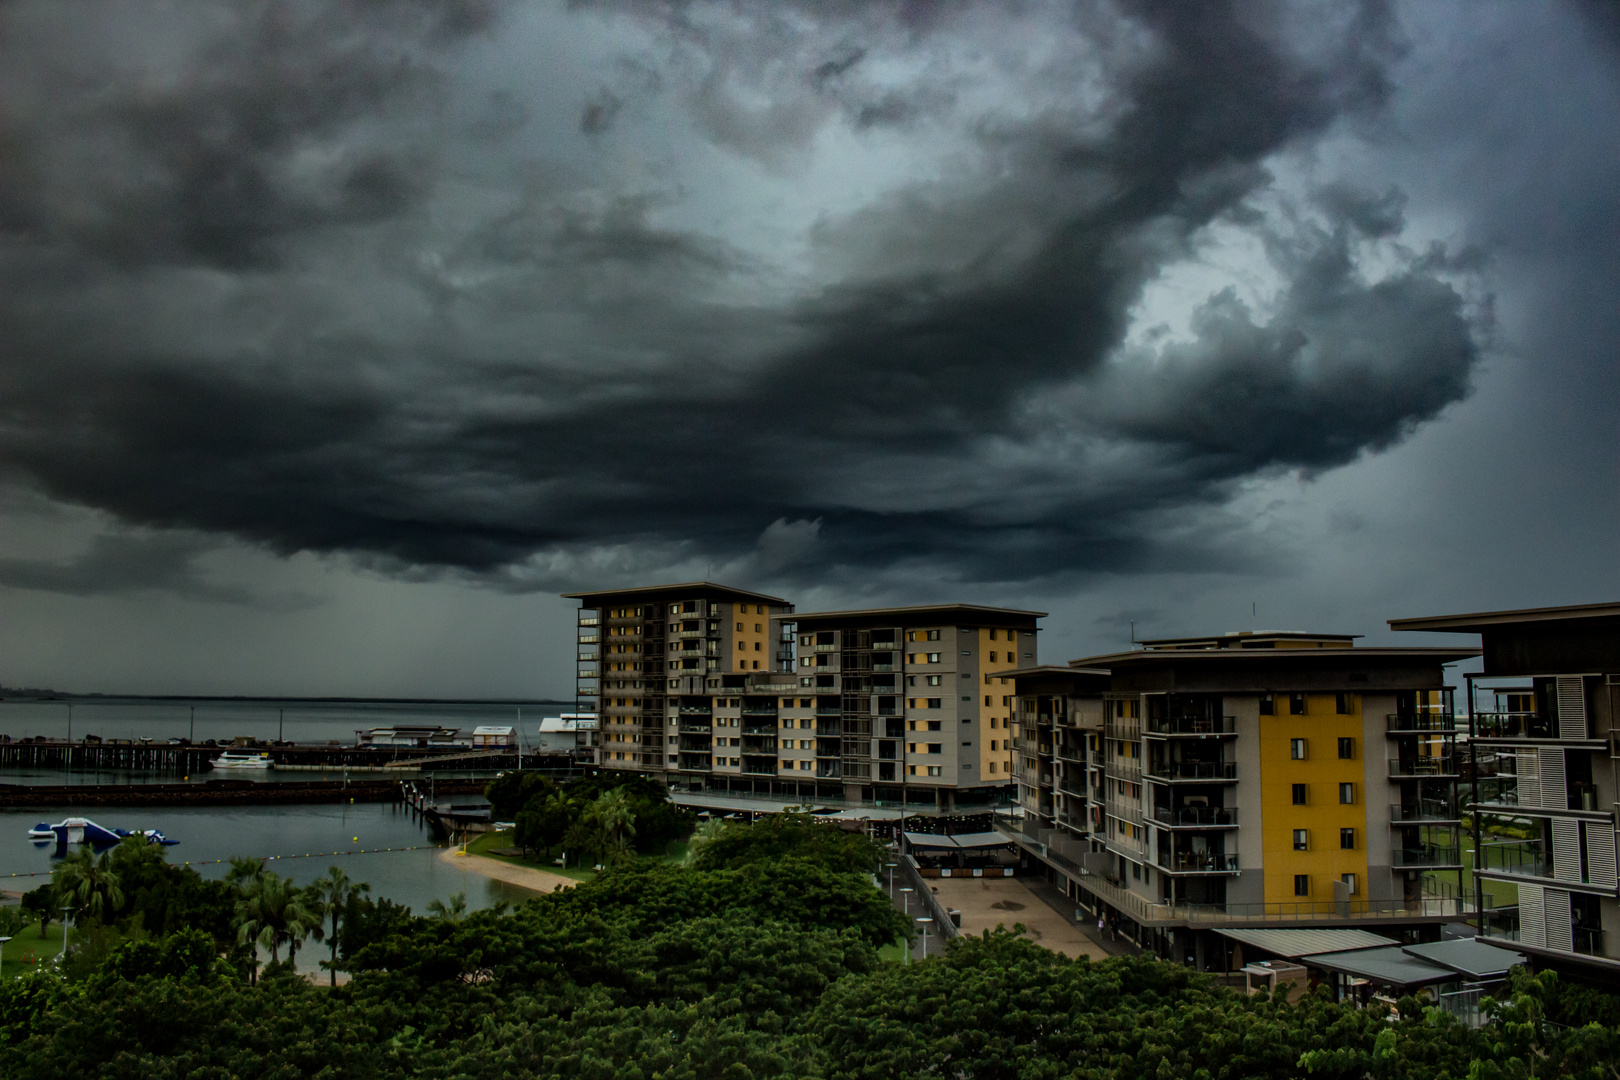 Storm over Darwin Waterfront Precinct